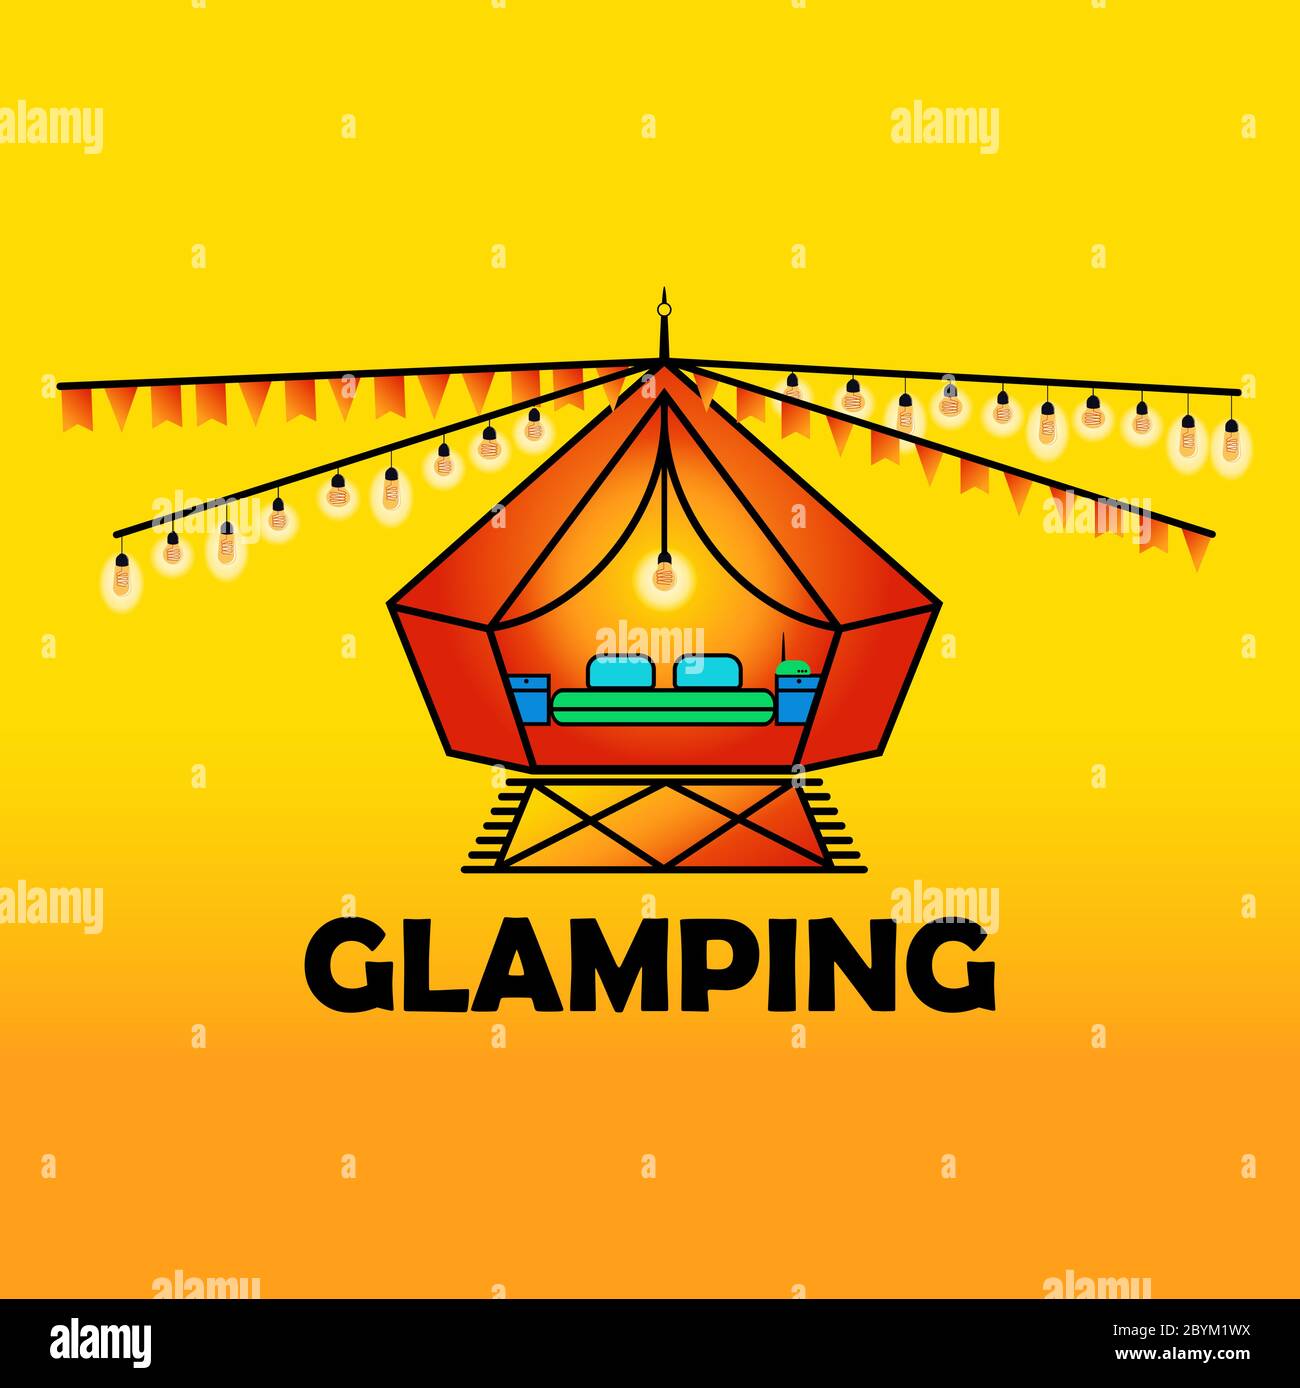 Glamping ou camping avec une icône de tente et des ampoules aux couleurs modernes et lumineuses, isolées sur un fond orange vif. Confort, wifi. SPE 10 Illustration de Vecteur